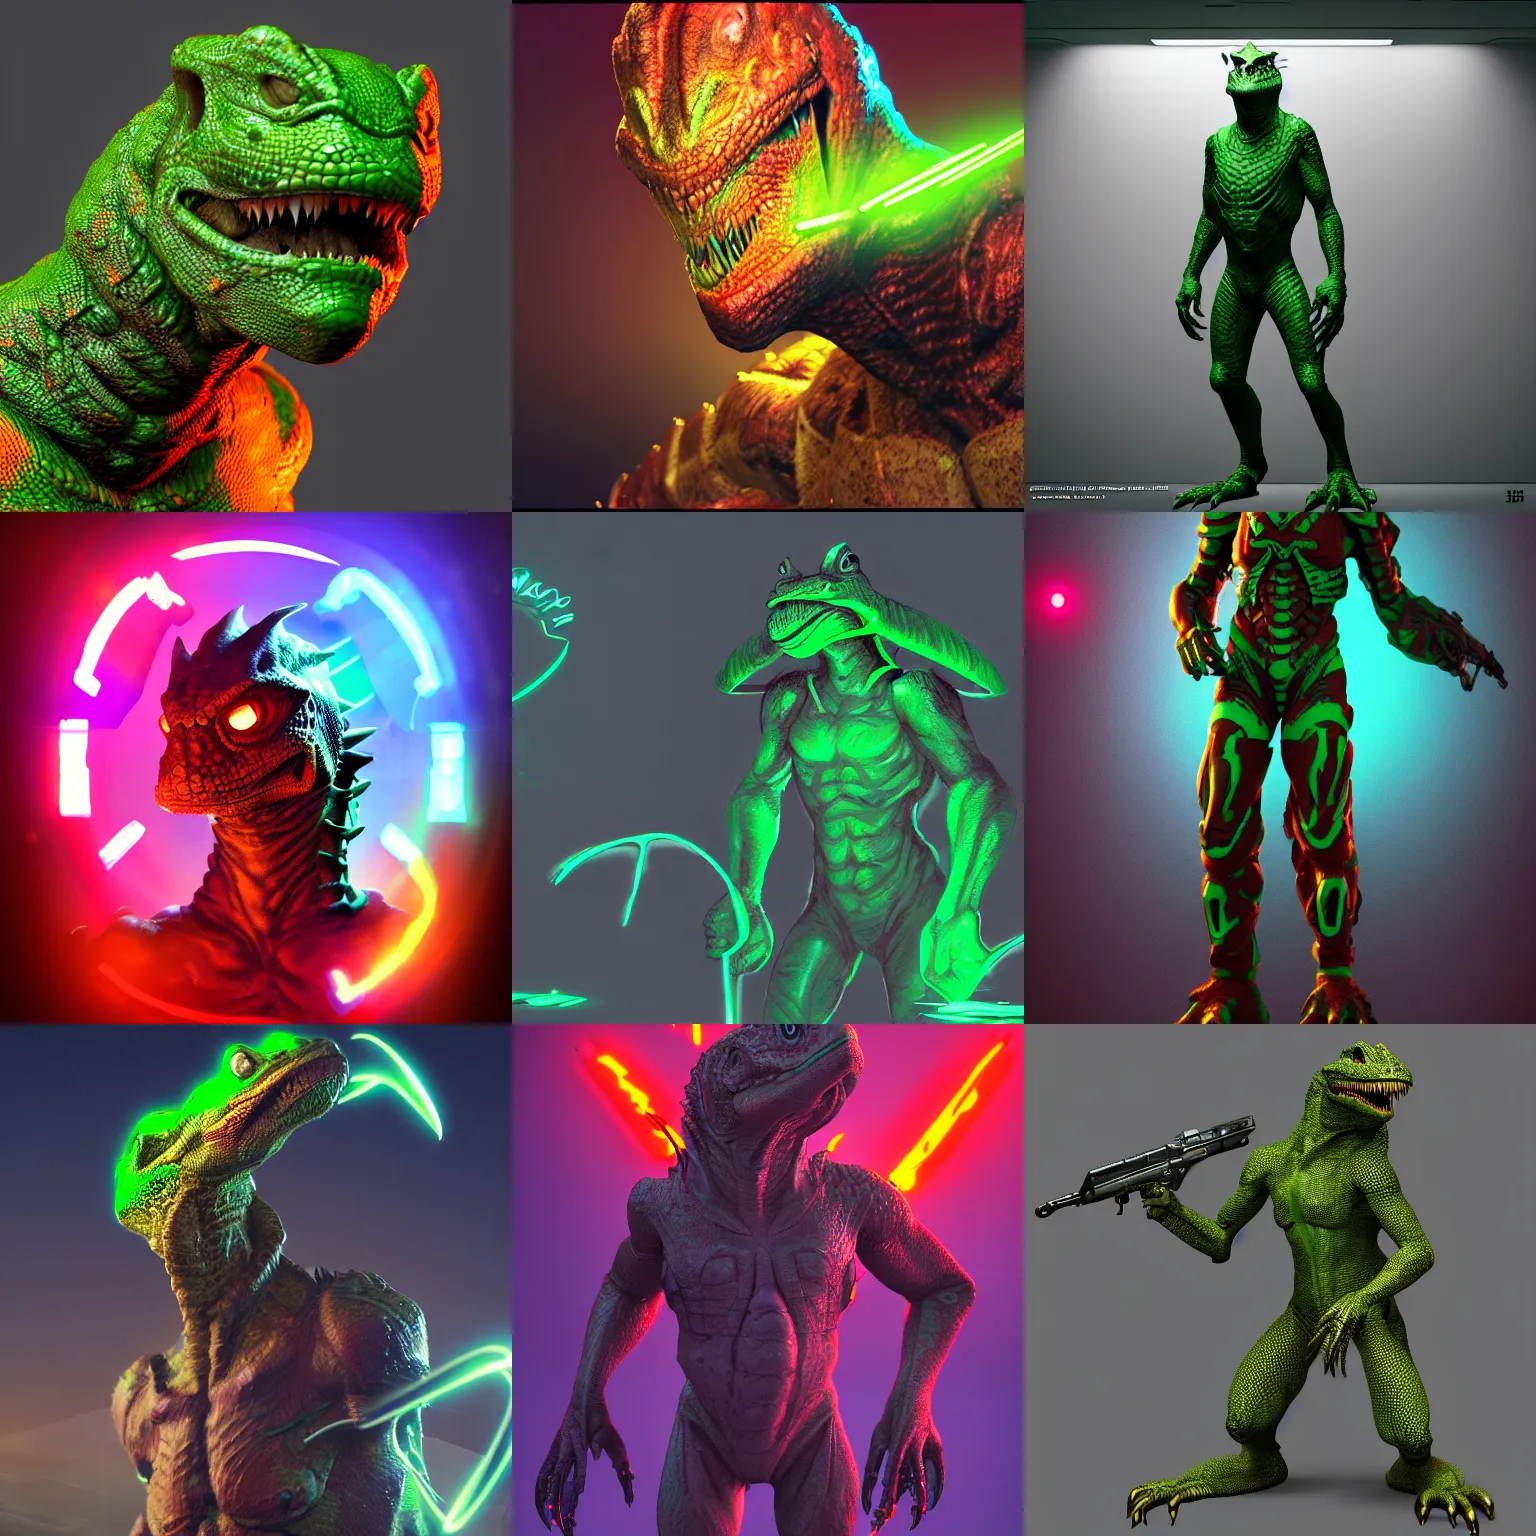 Prompt: scifi lizardman soldier, high resolution, concept art, trending on artstation, 4k, neon lighting